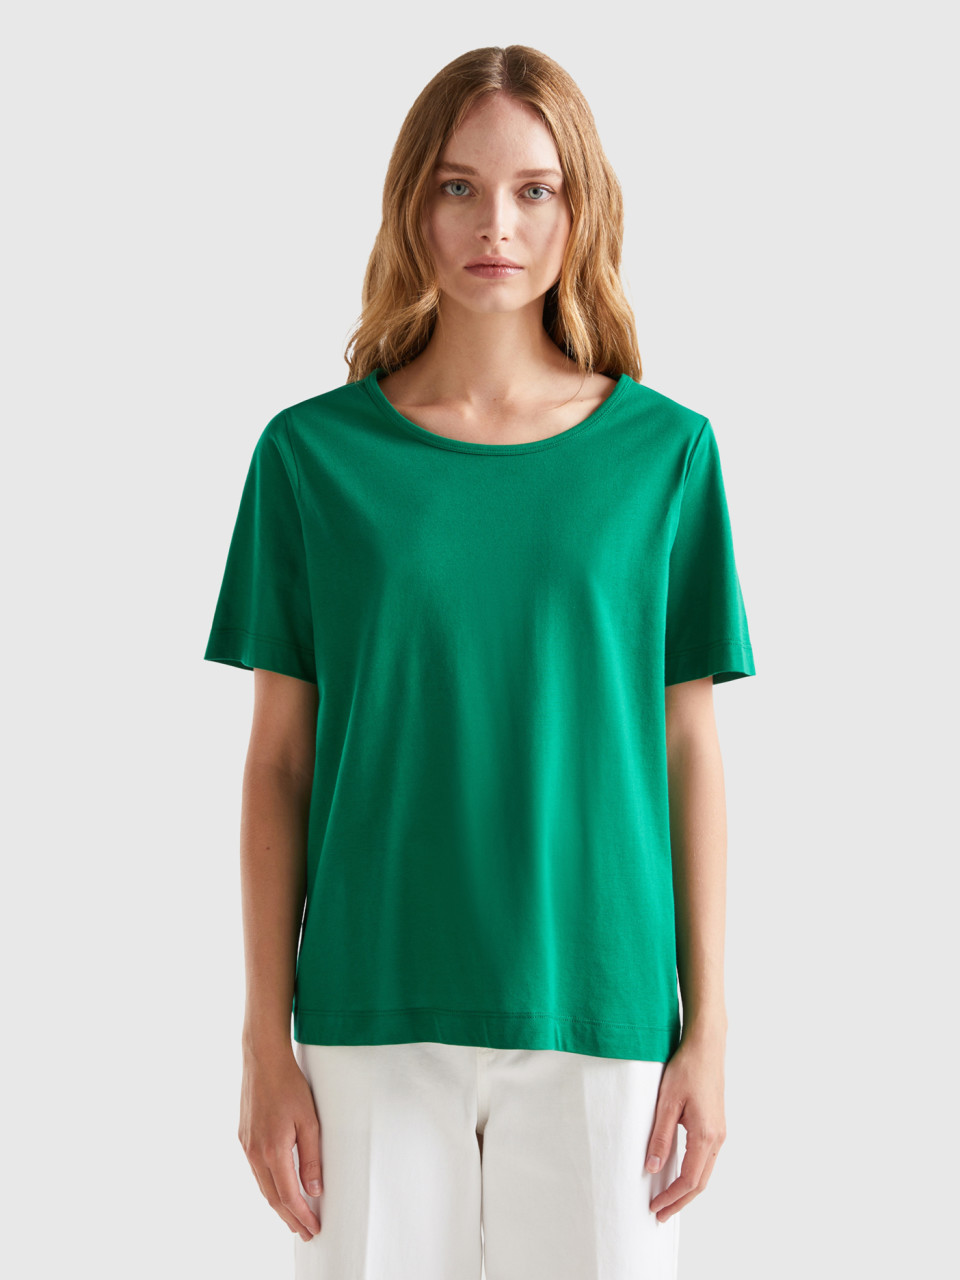 Benetton, Forest Green Short Sleeve T-shirt, Green, Women